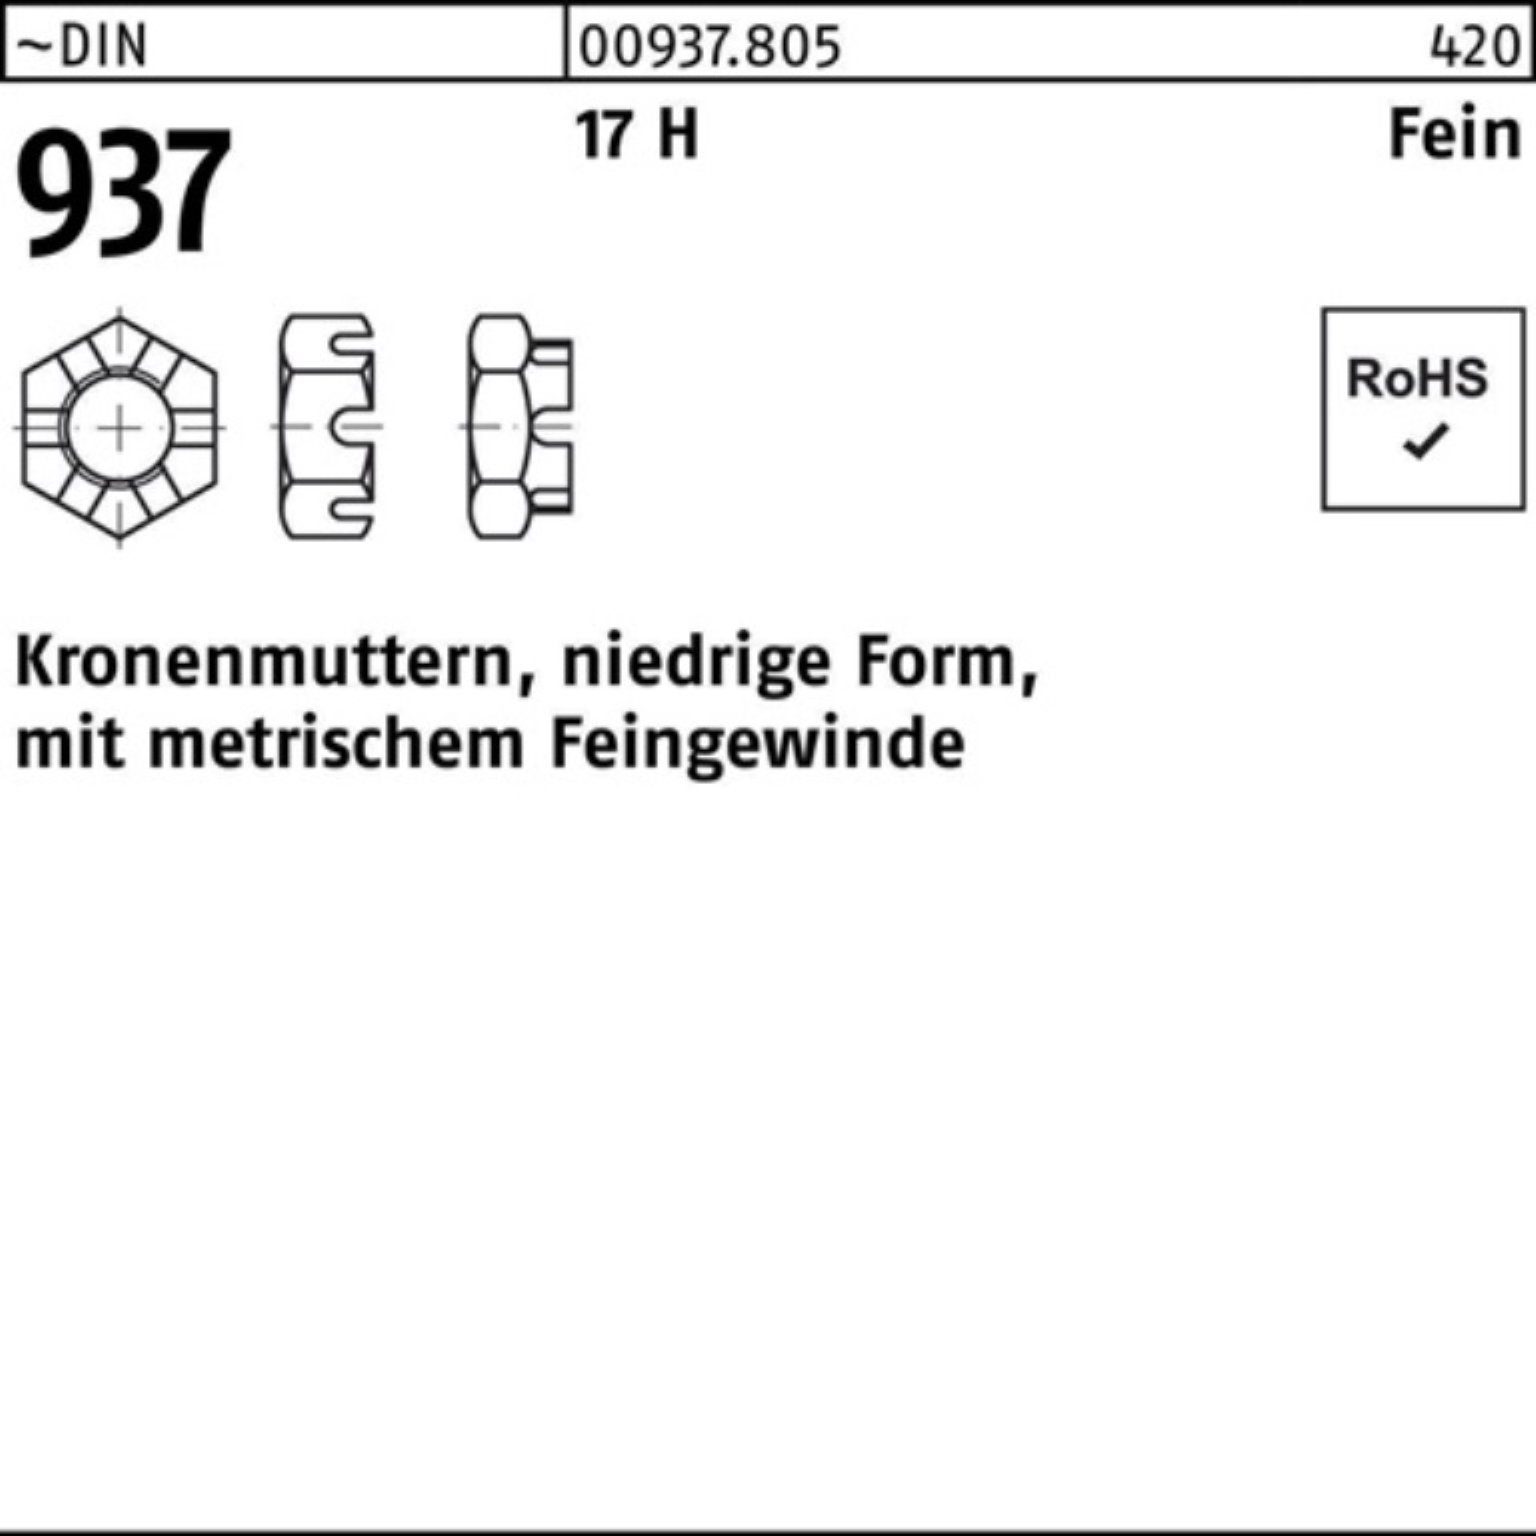 Reyher Kronenmutter 100er Pack Kronenmutter DIN 937 niedrige FormM33x 1,5 17 H Feingew. 1